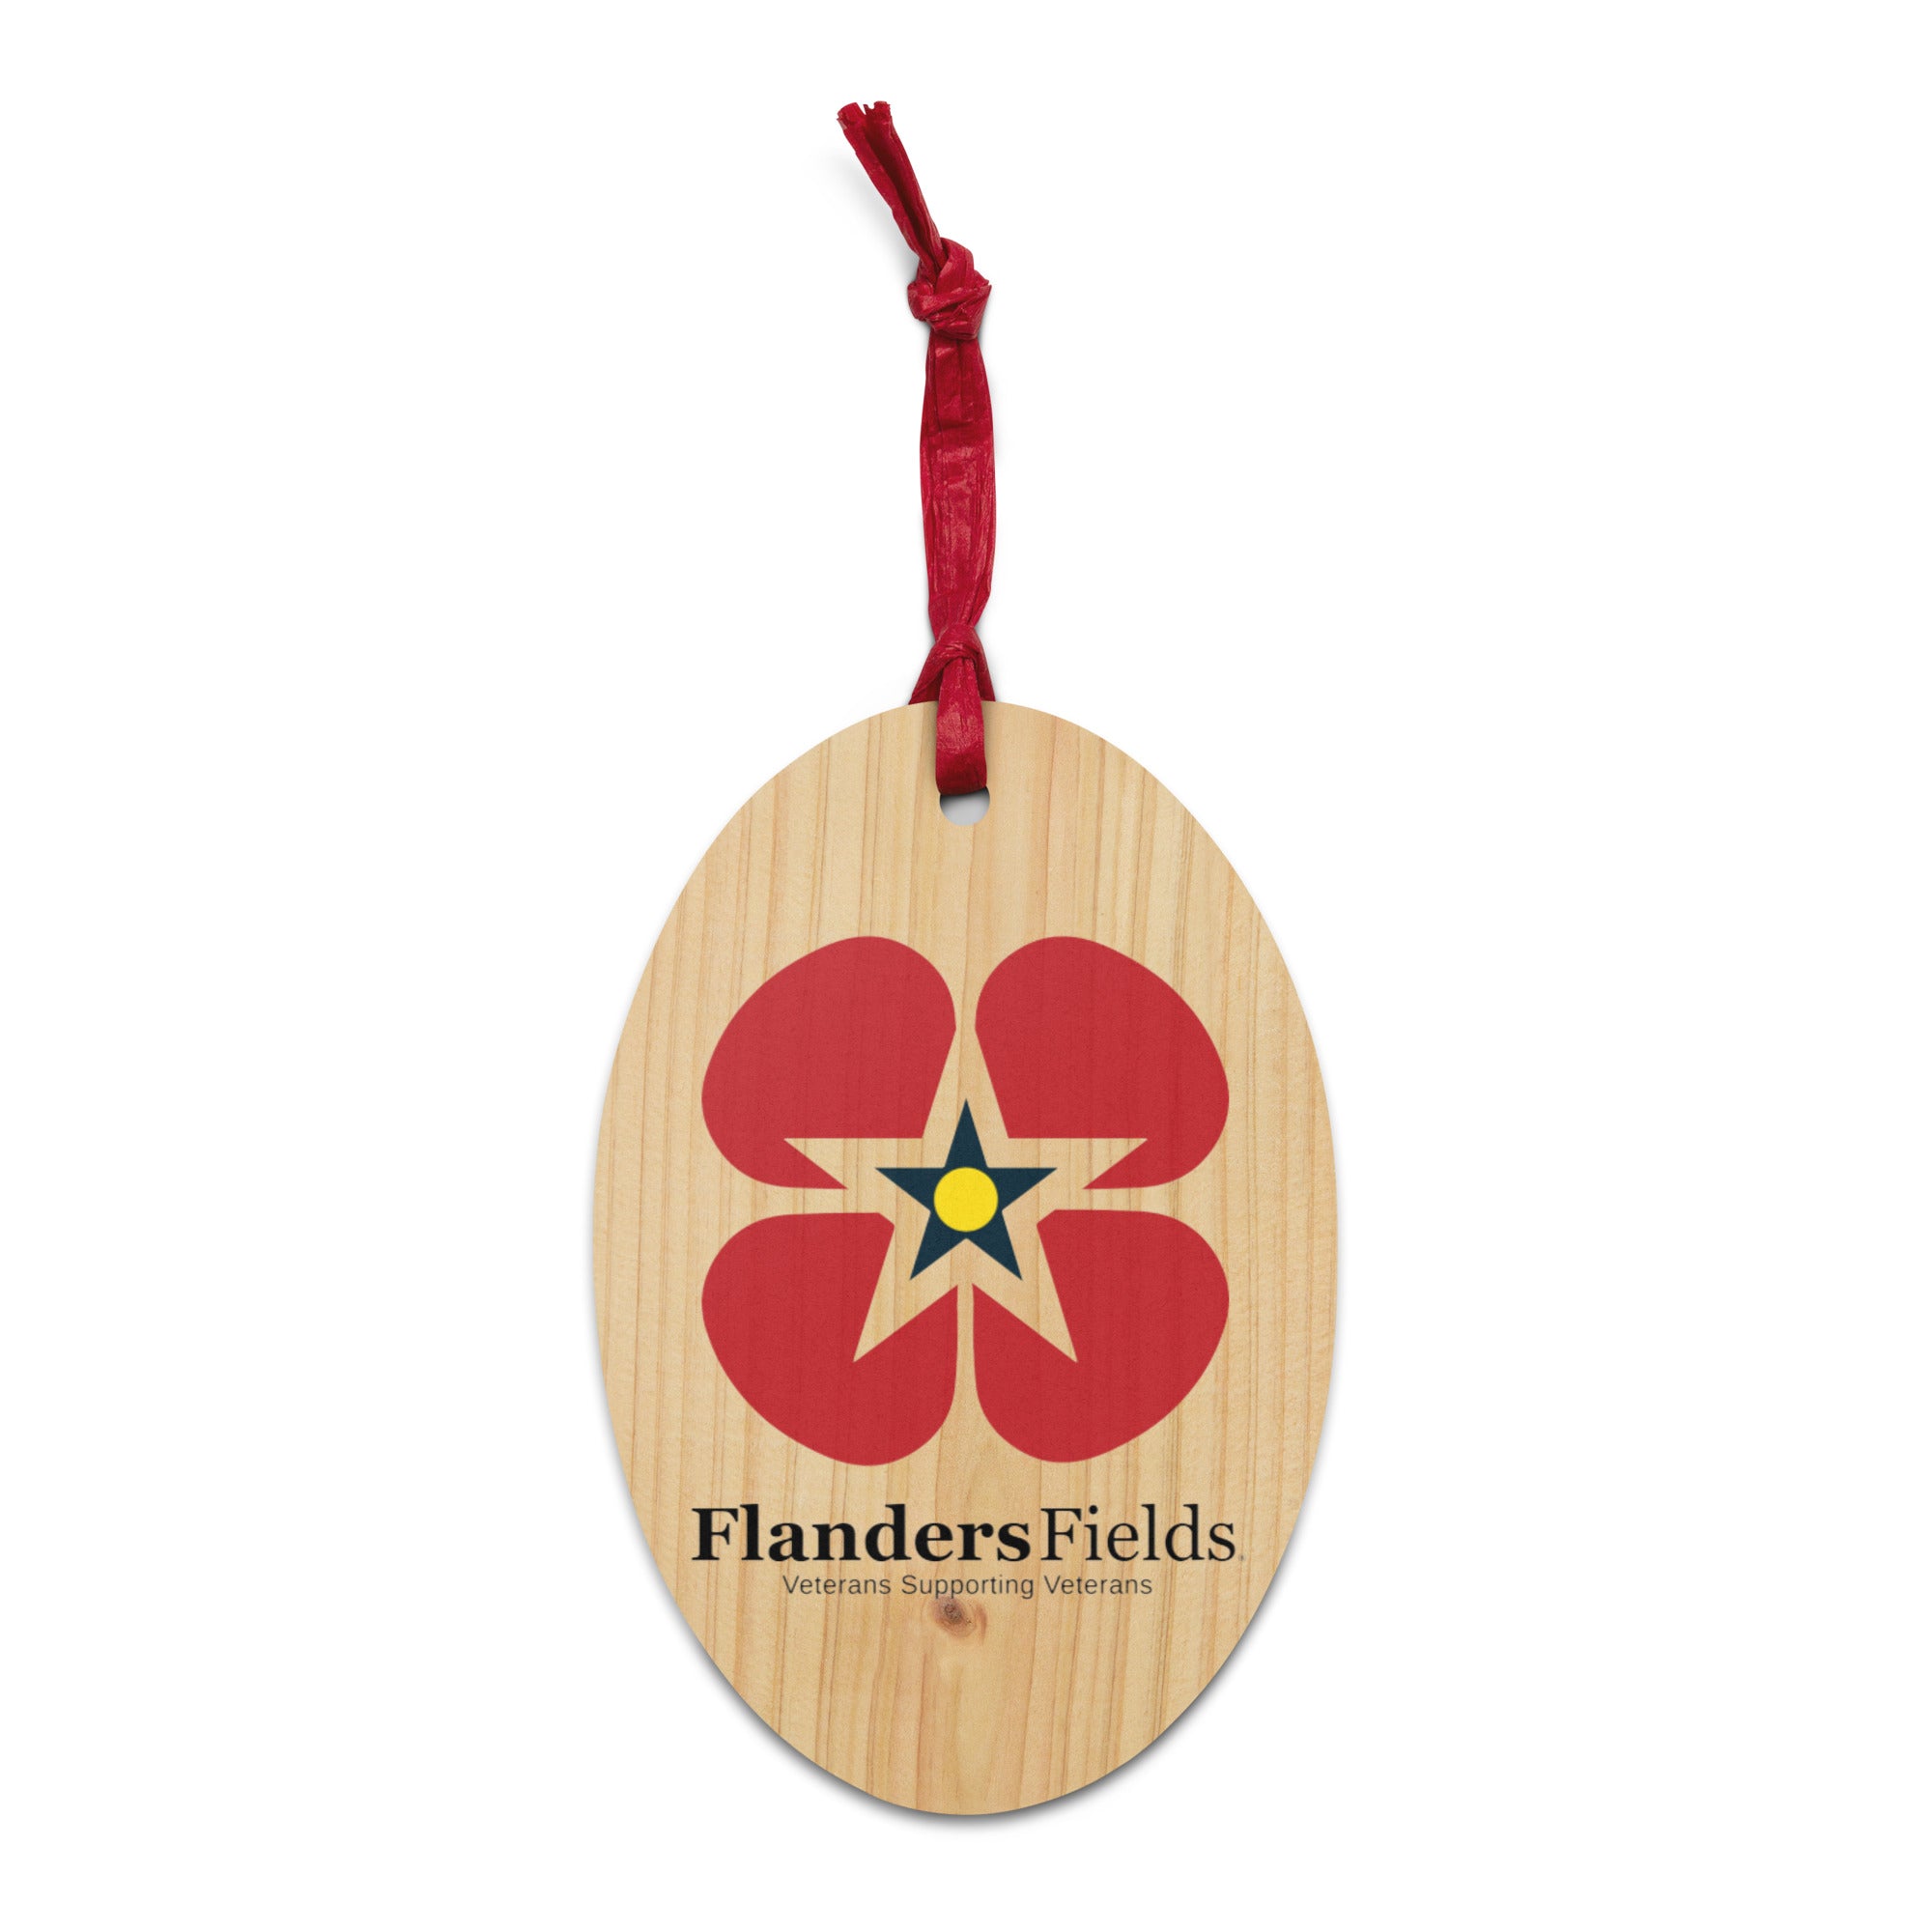 Wooden ornaments - Flanders Fields Logo